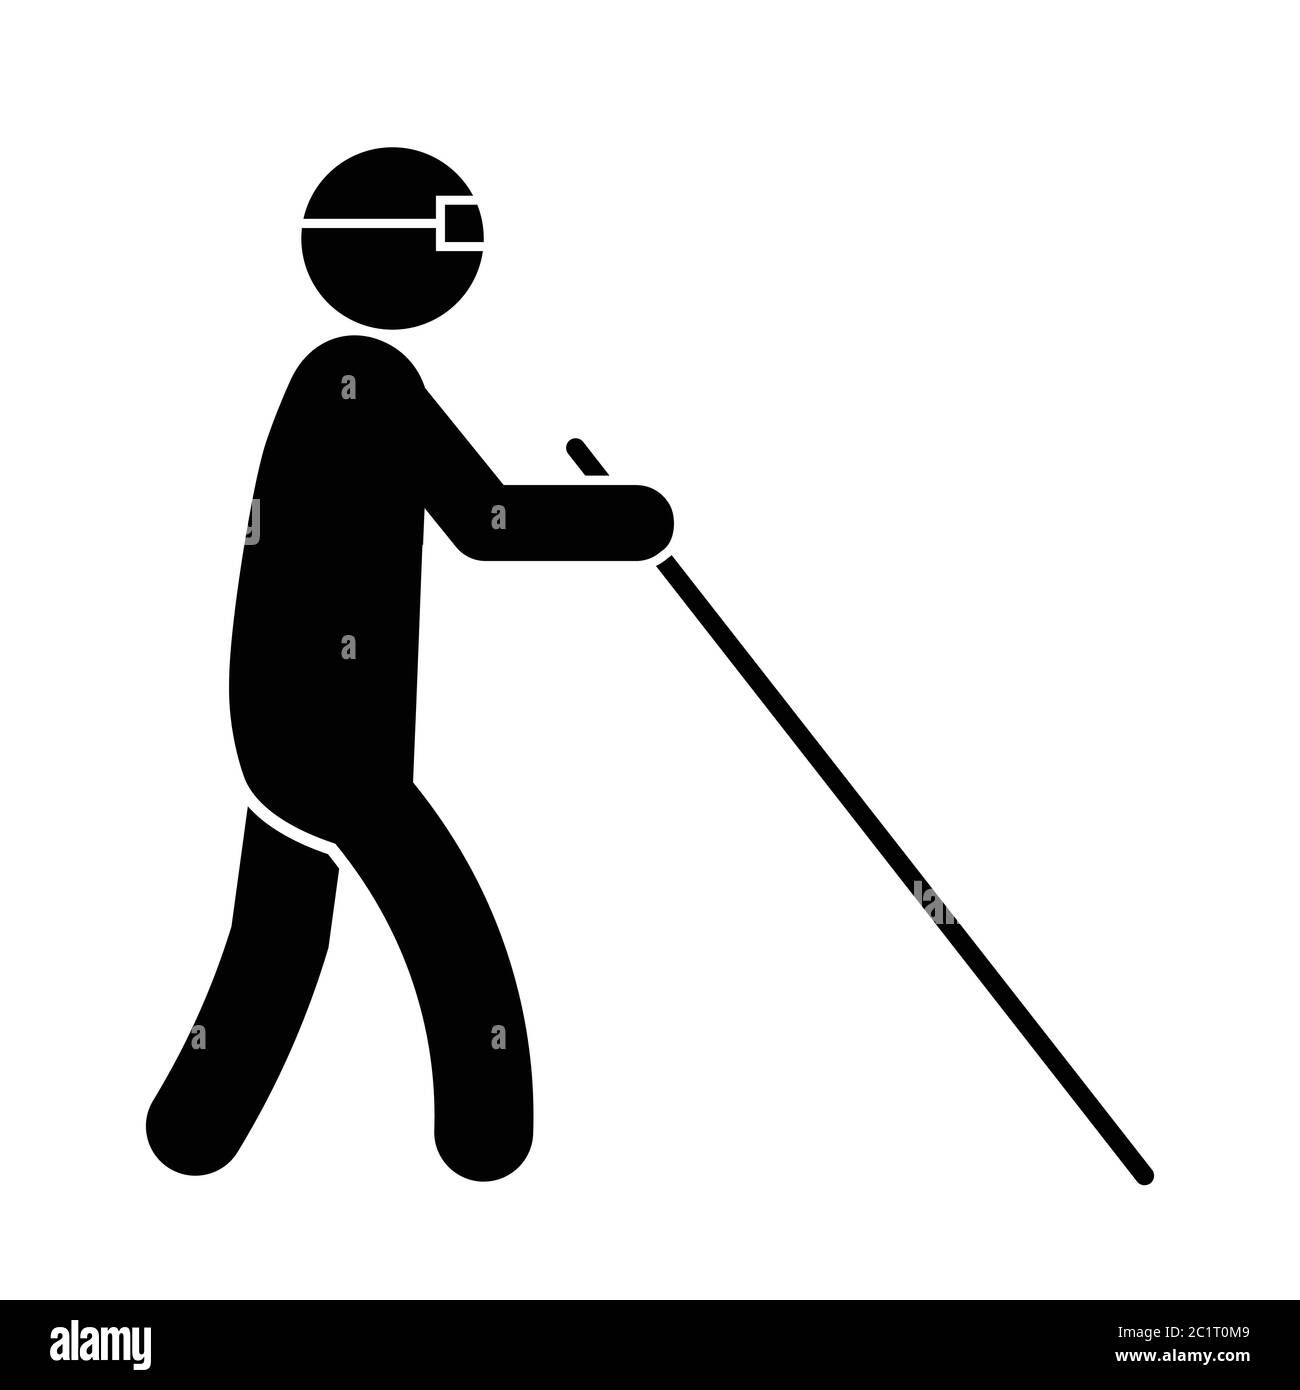 Personaggio Blind Man Stick Walking con una canna bianca e bicchieri. Illustrazione nera isolata su sfondo bianco. Vettore EPS Illustrazione Vettoriale